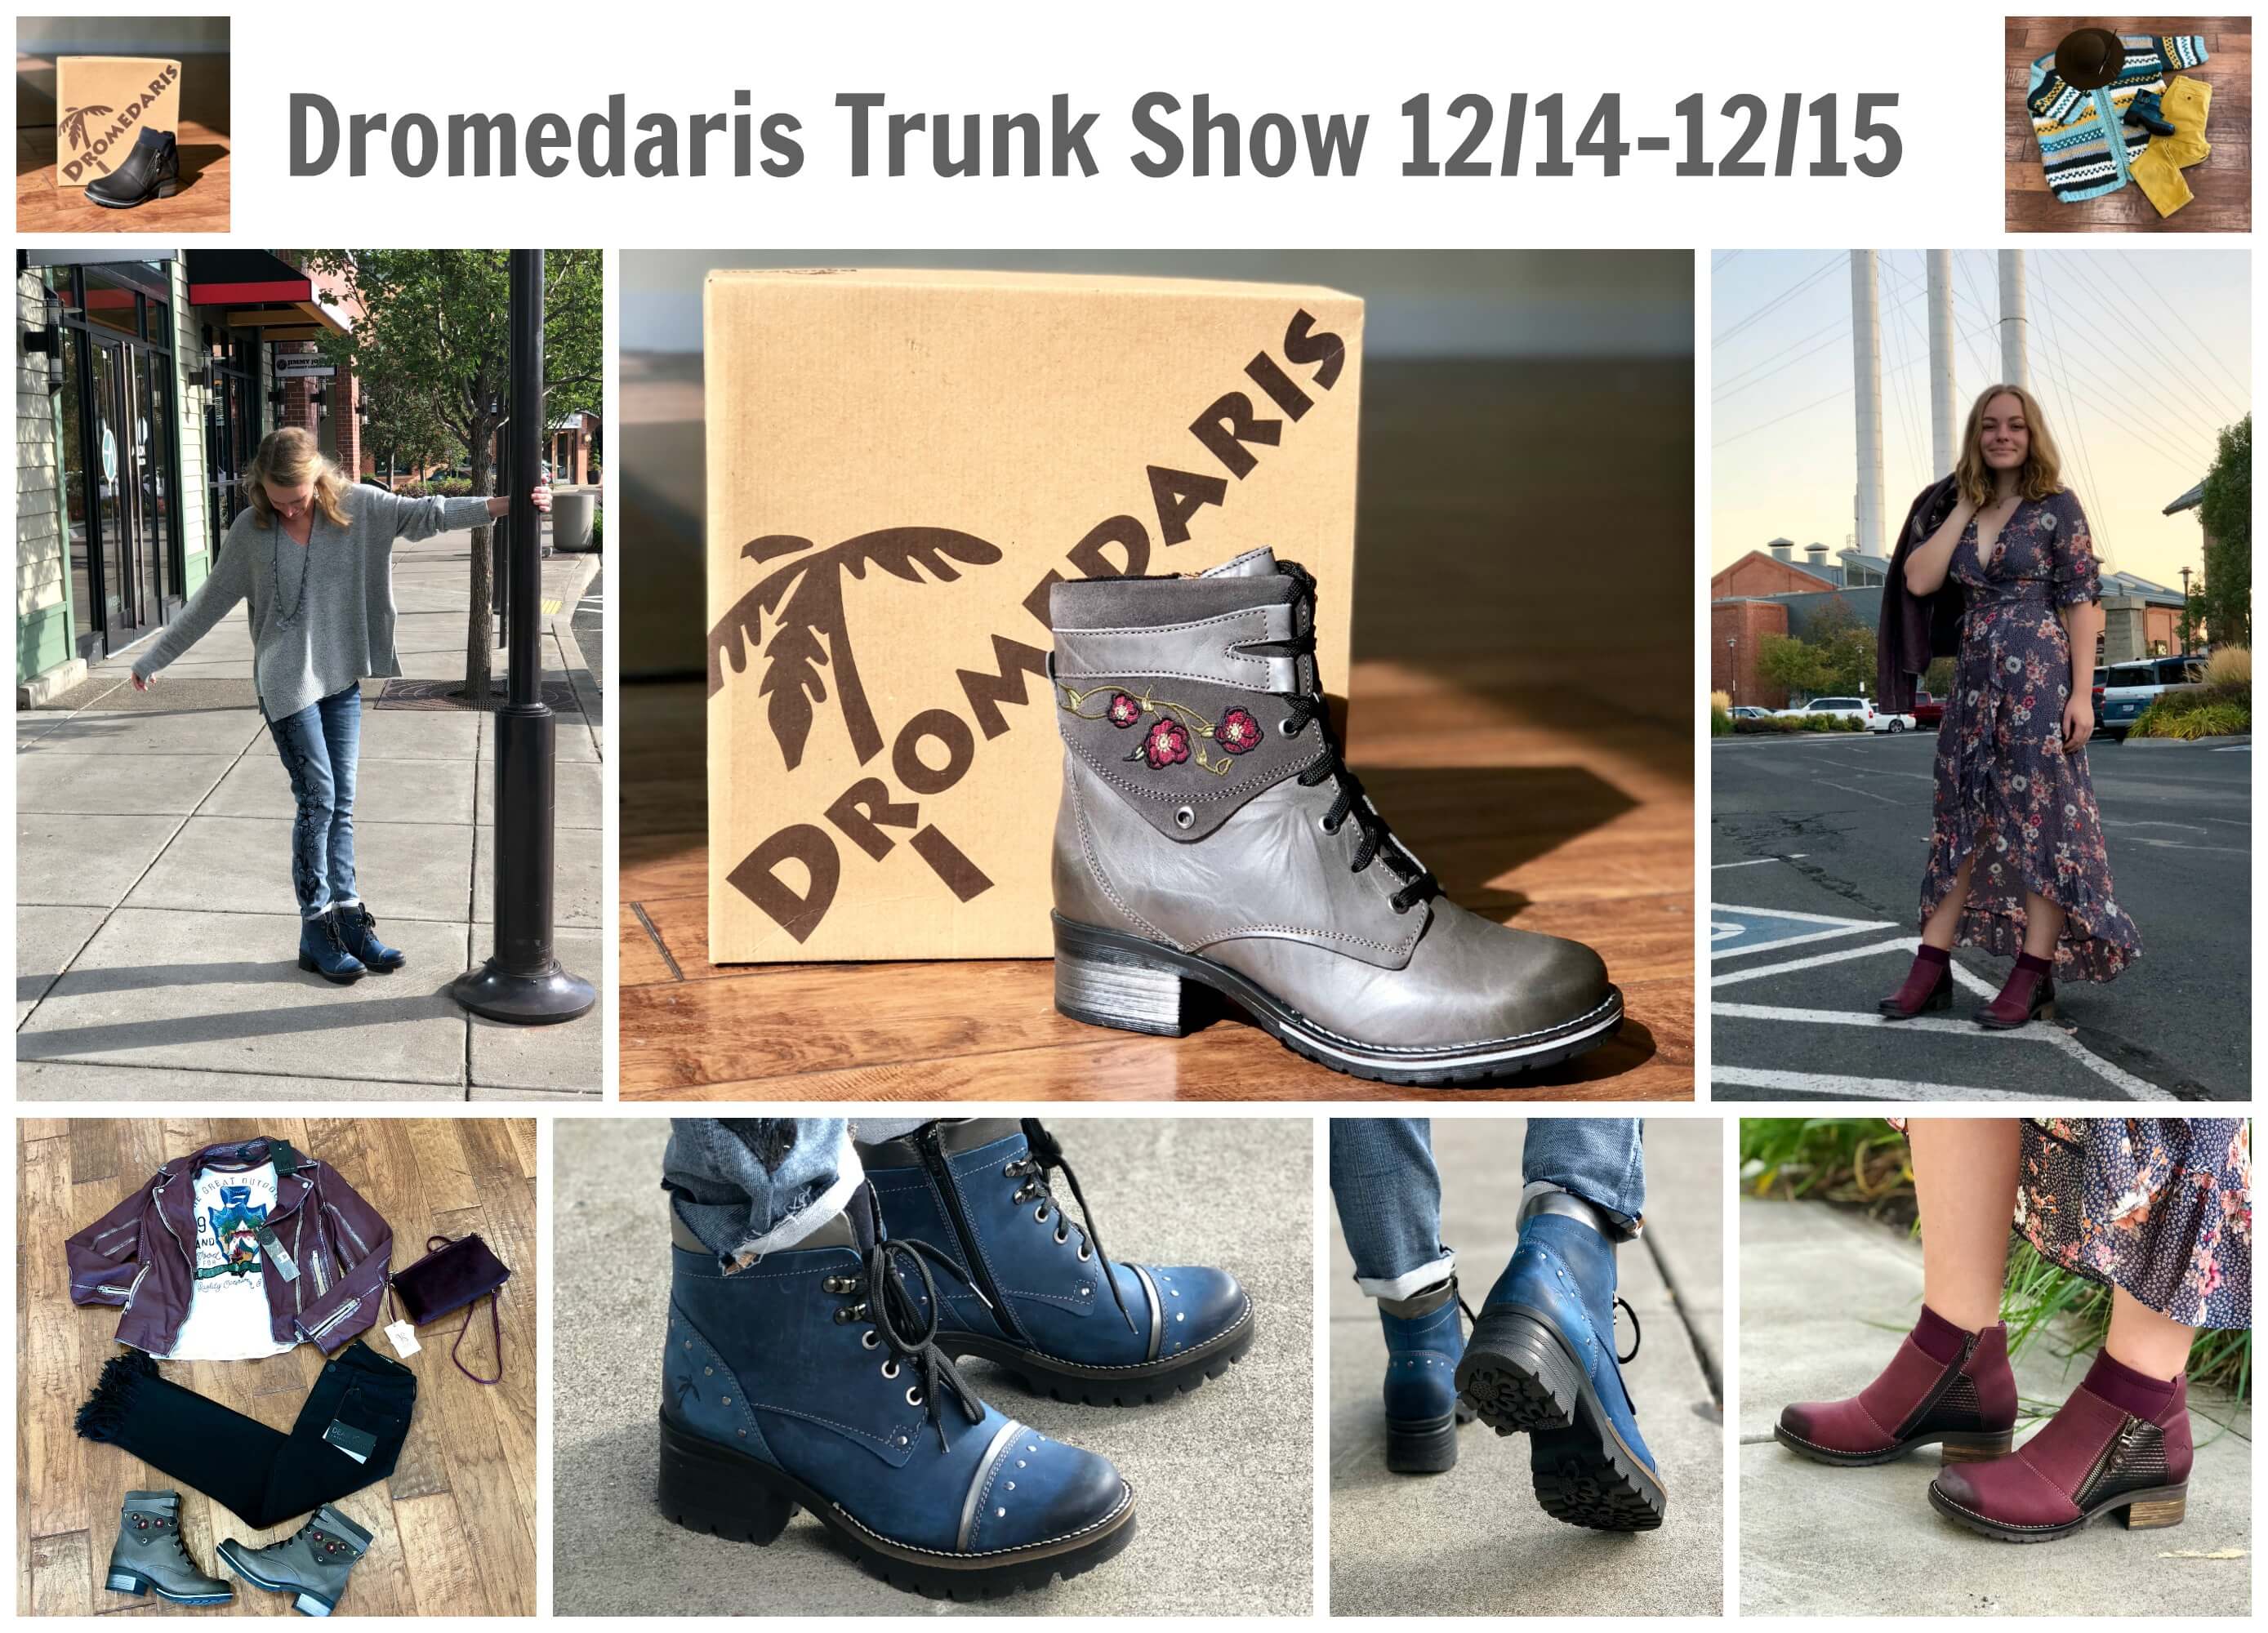 Images of Dromedaris footwear.